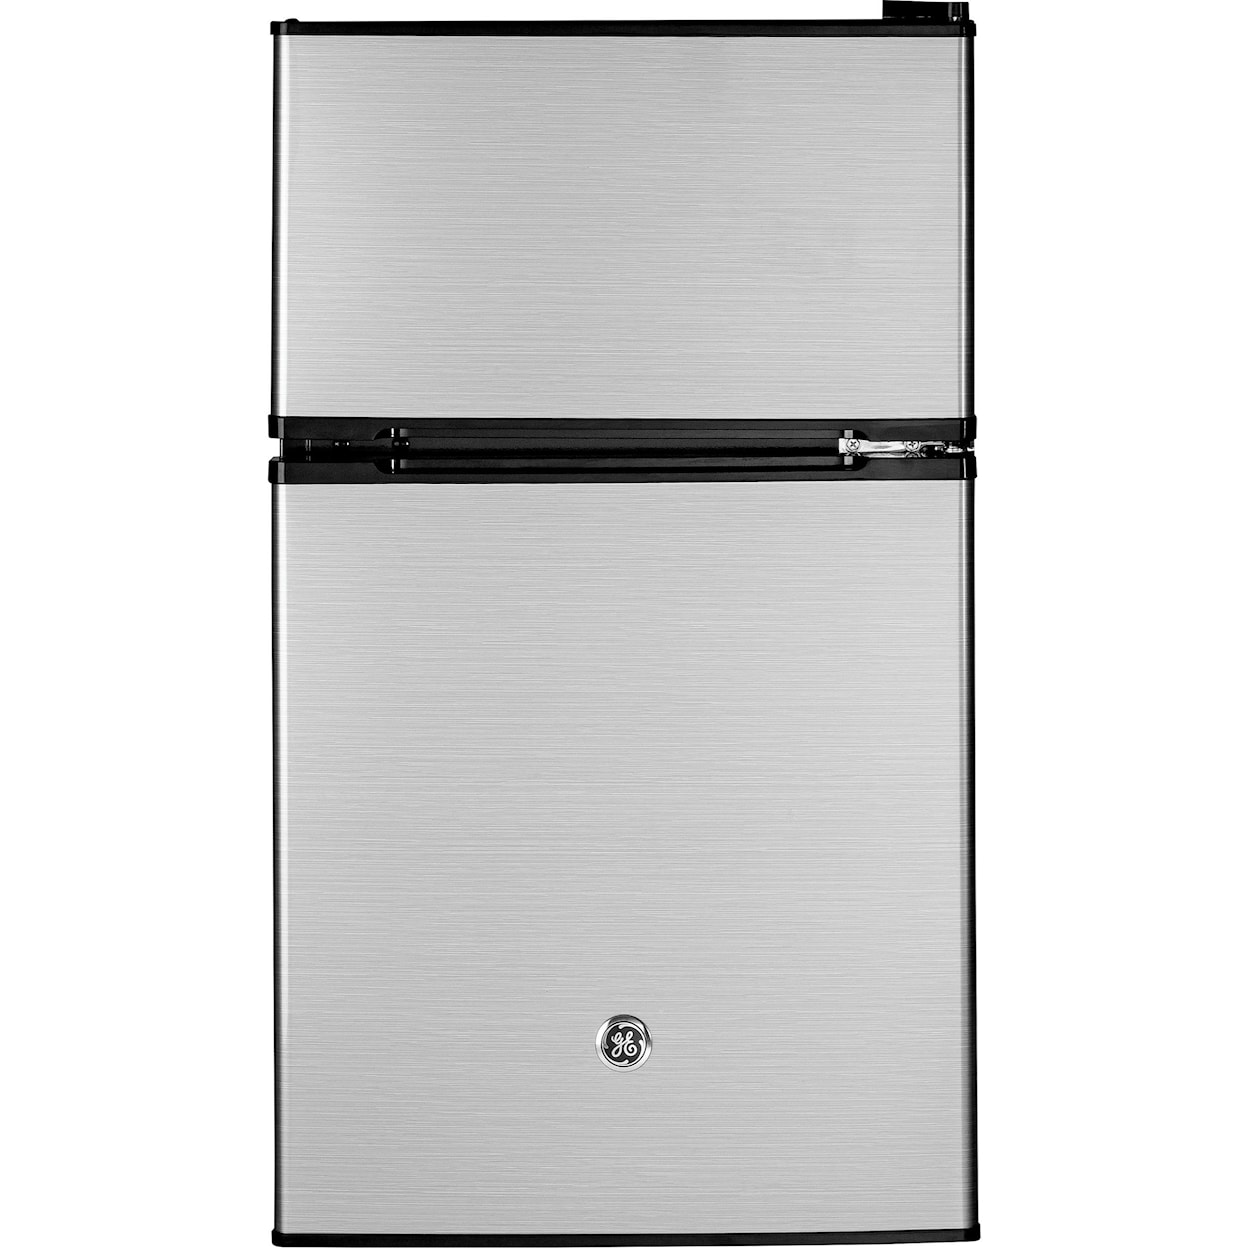 GE Appliances Compact Refrigerators - GE GE® Double-Door Compact Refrigerator